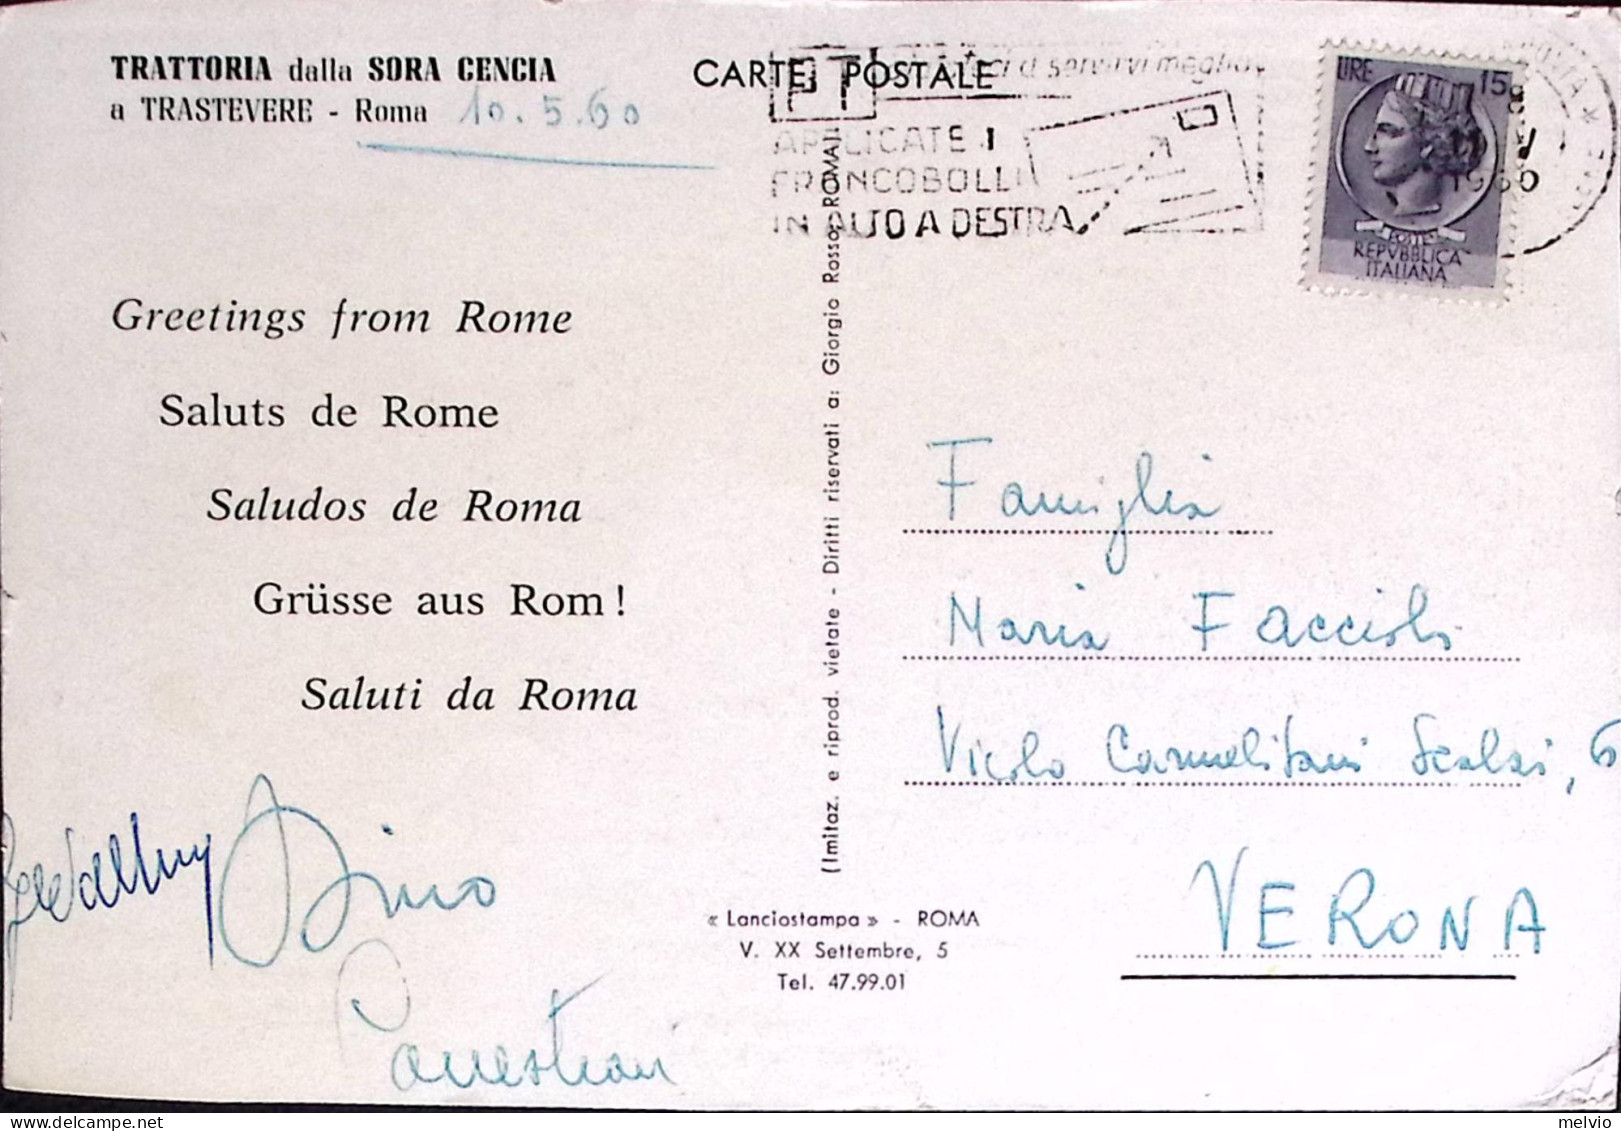 1960-ROMA Trattoria Della Sora Cencia Cartolina Pubblicitaria Viaggiata - Pubblicitari